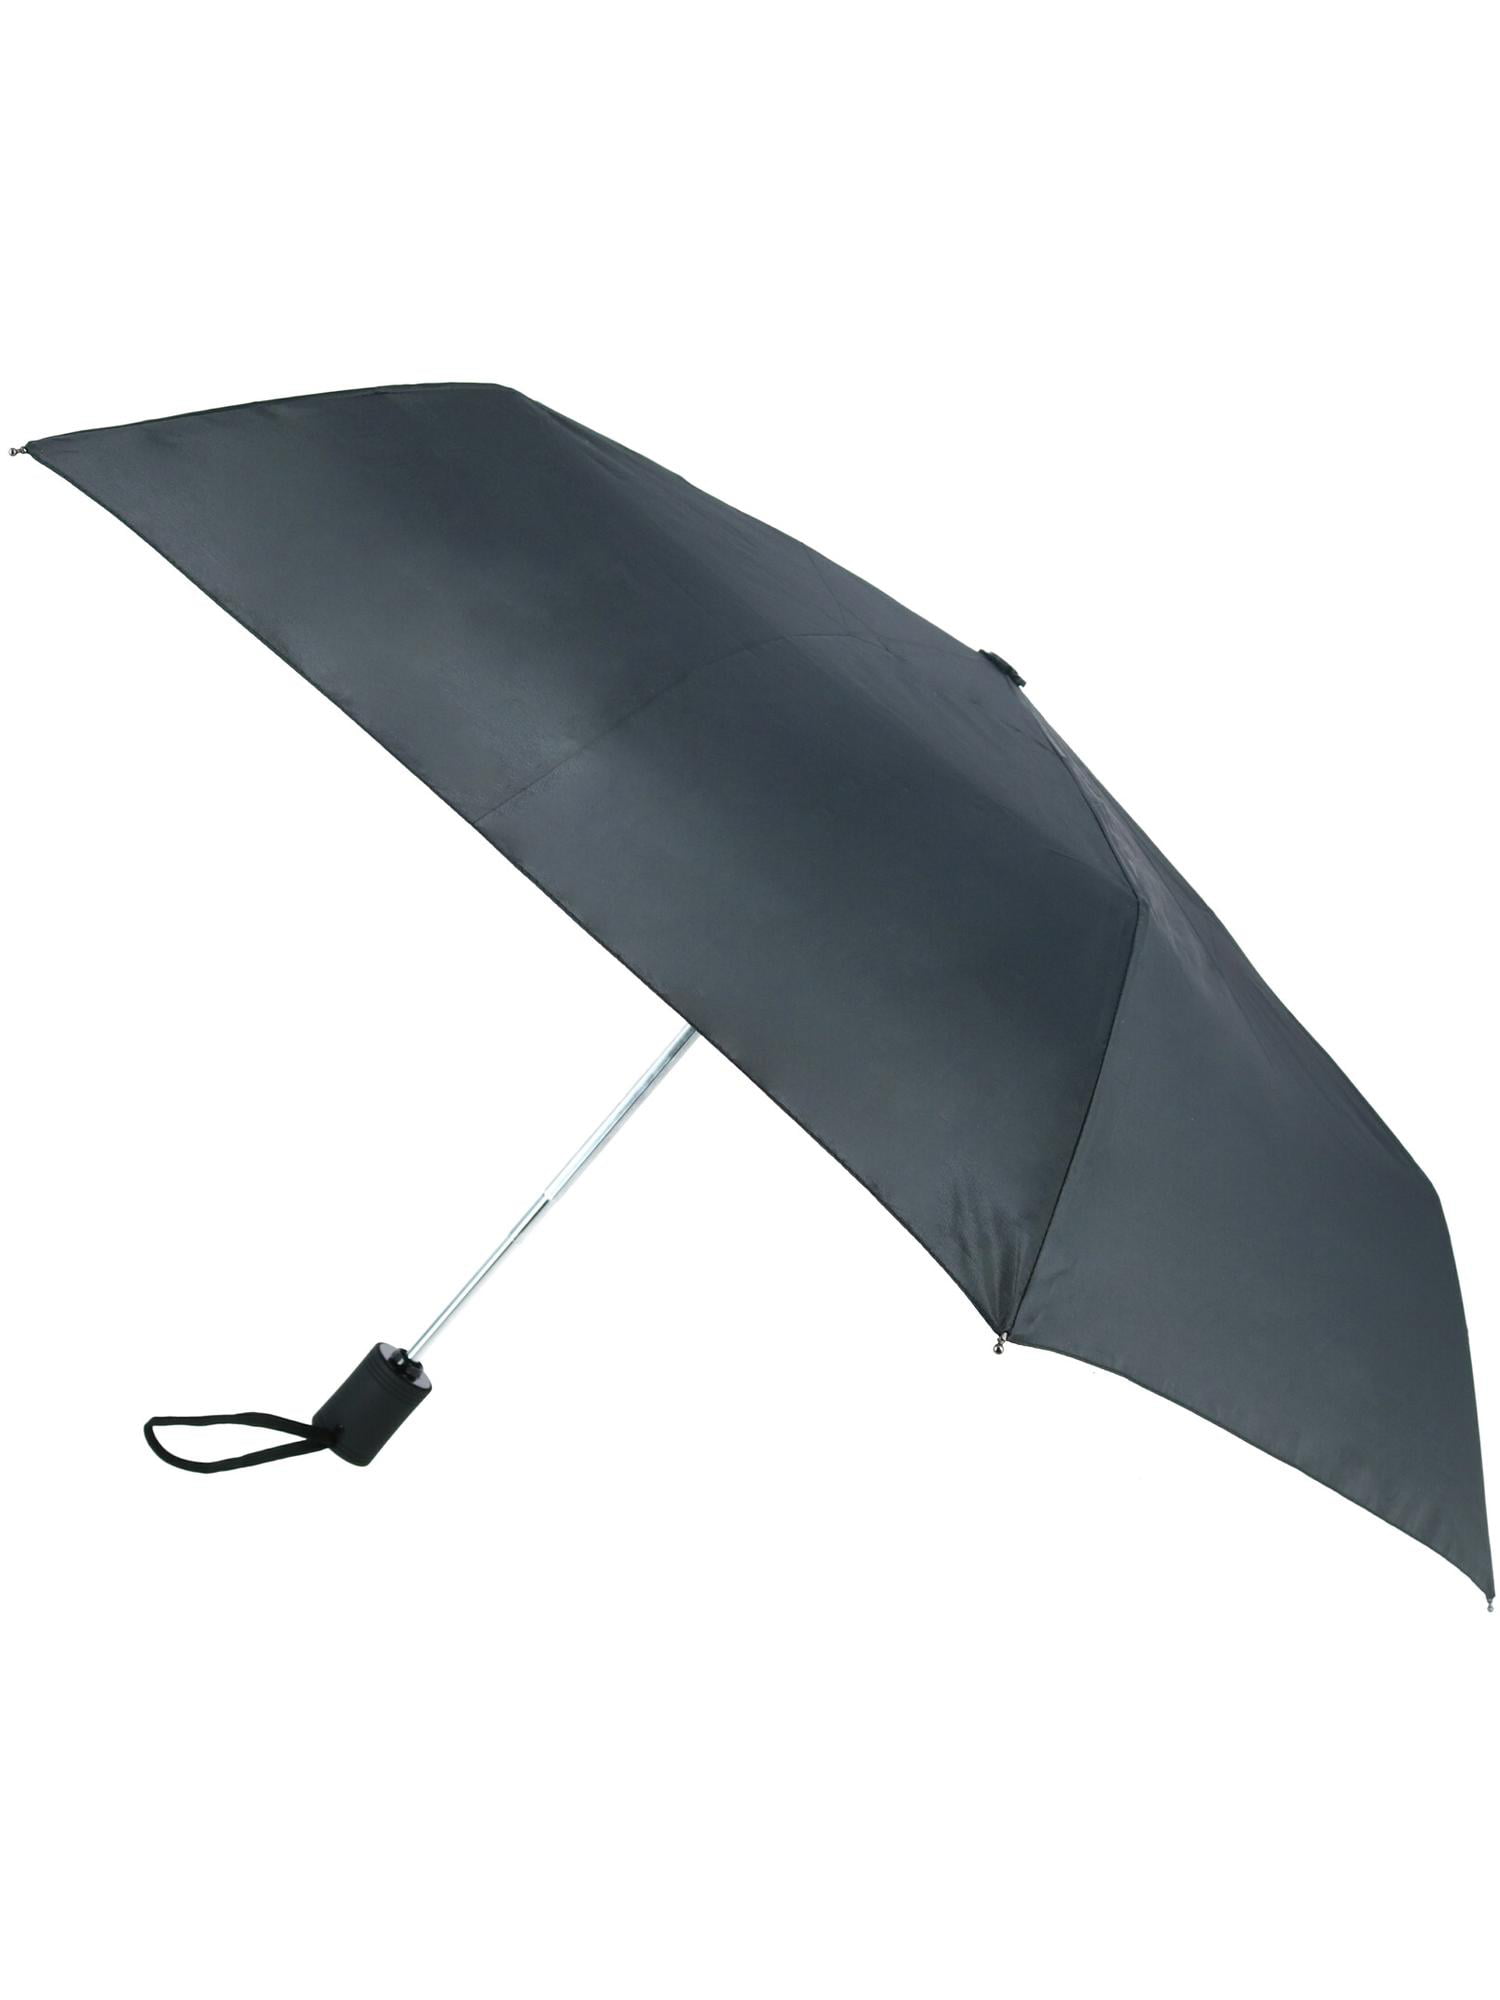 ShedRain WindPro Vented Auto Open Auto Close Compact Umbrella with Teflon